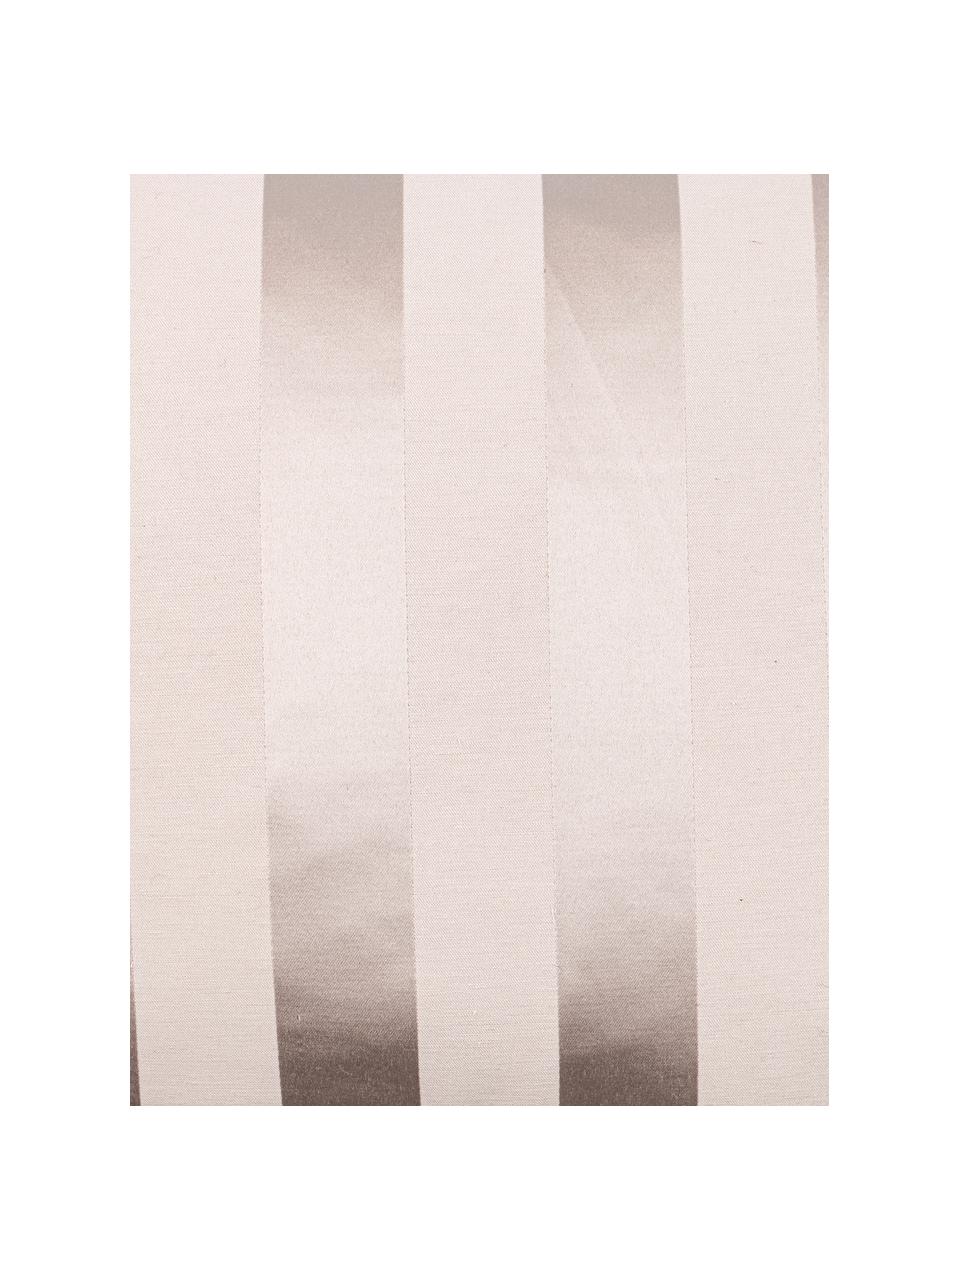 Kissenhülle Sue in Beige mit glänzenden Streifen, 70% Baumwolle, 30% Polyester, Beige, 40 x 40 cm